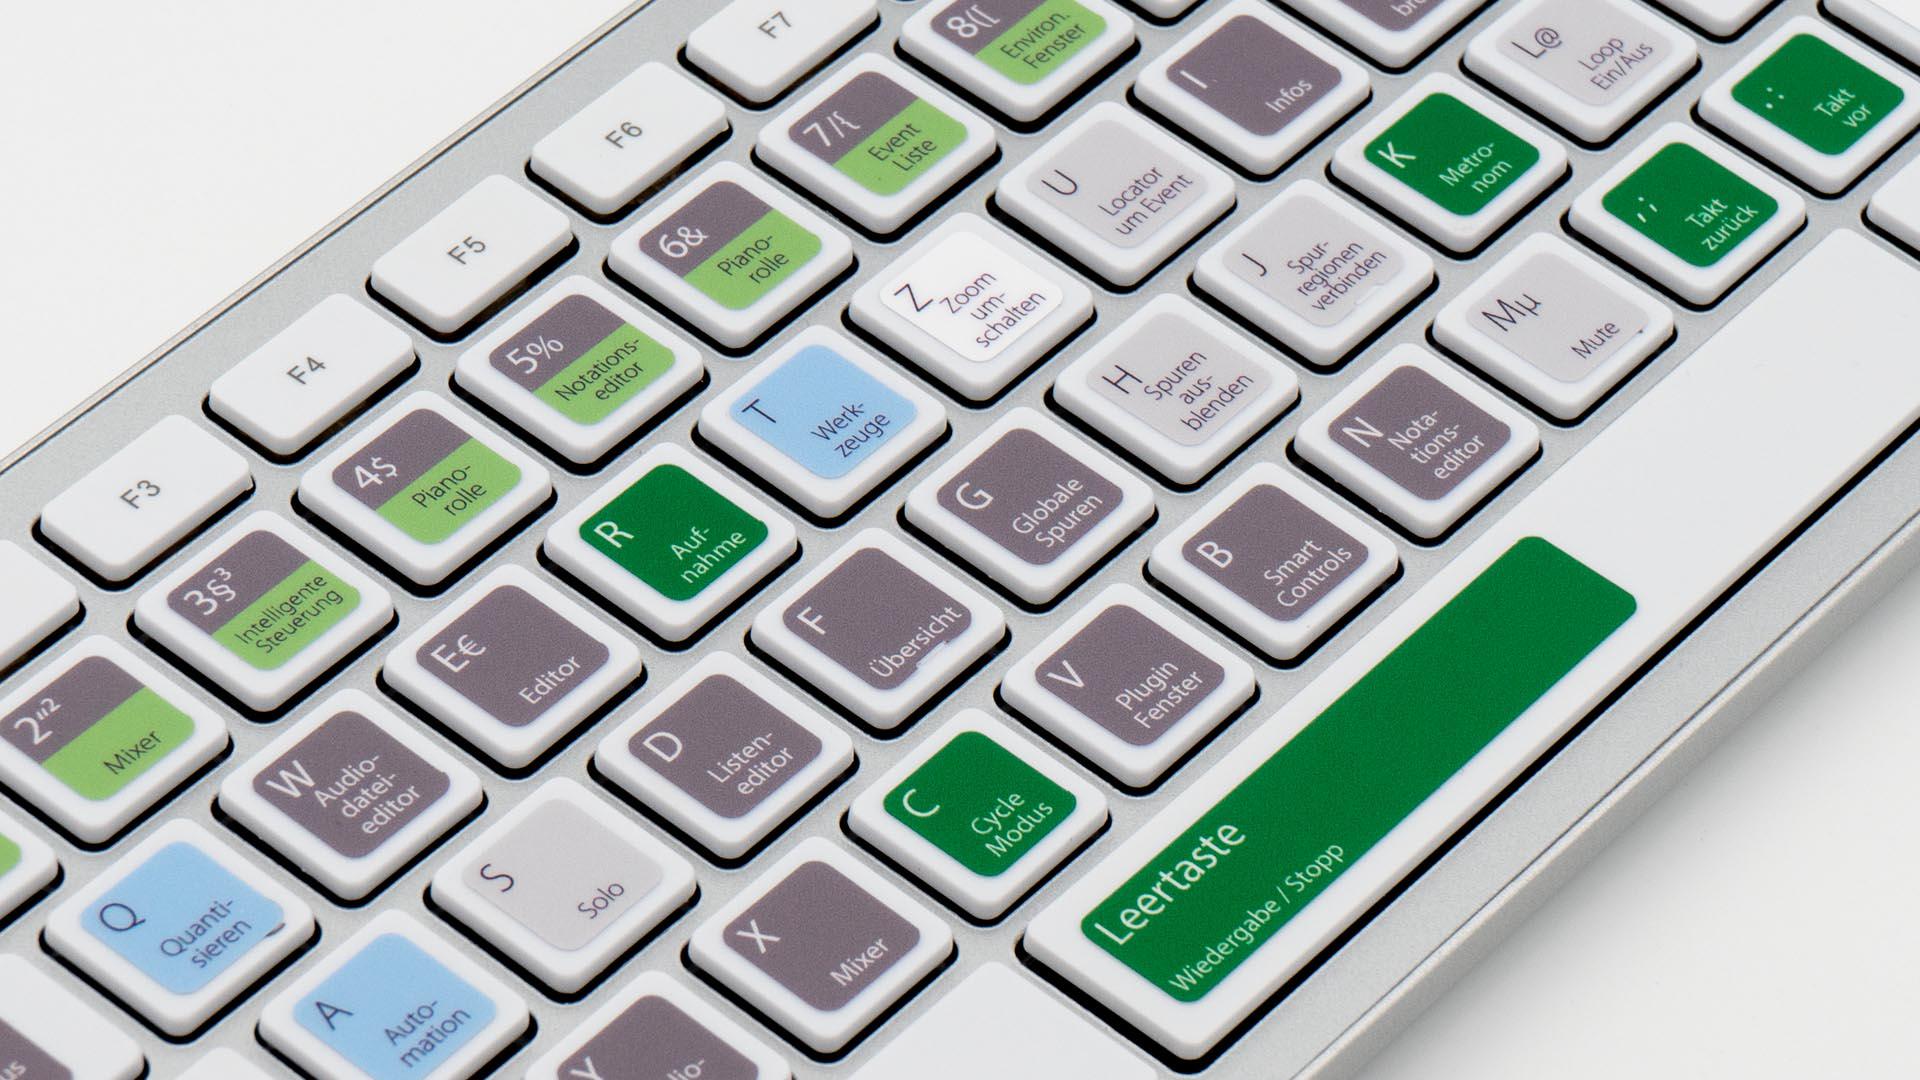 TasTutor Apple Logic Tastatur / Tastaturaufkleber / Sticker Nahansicht links - hier auf deutsch kaufen